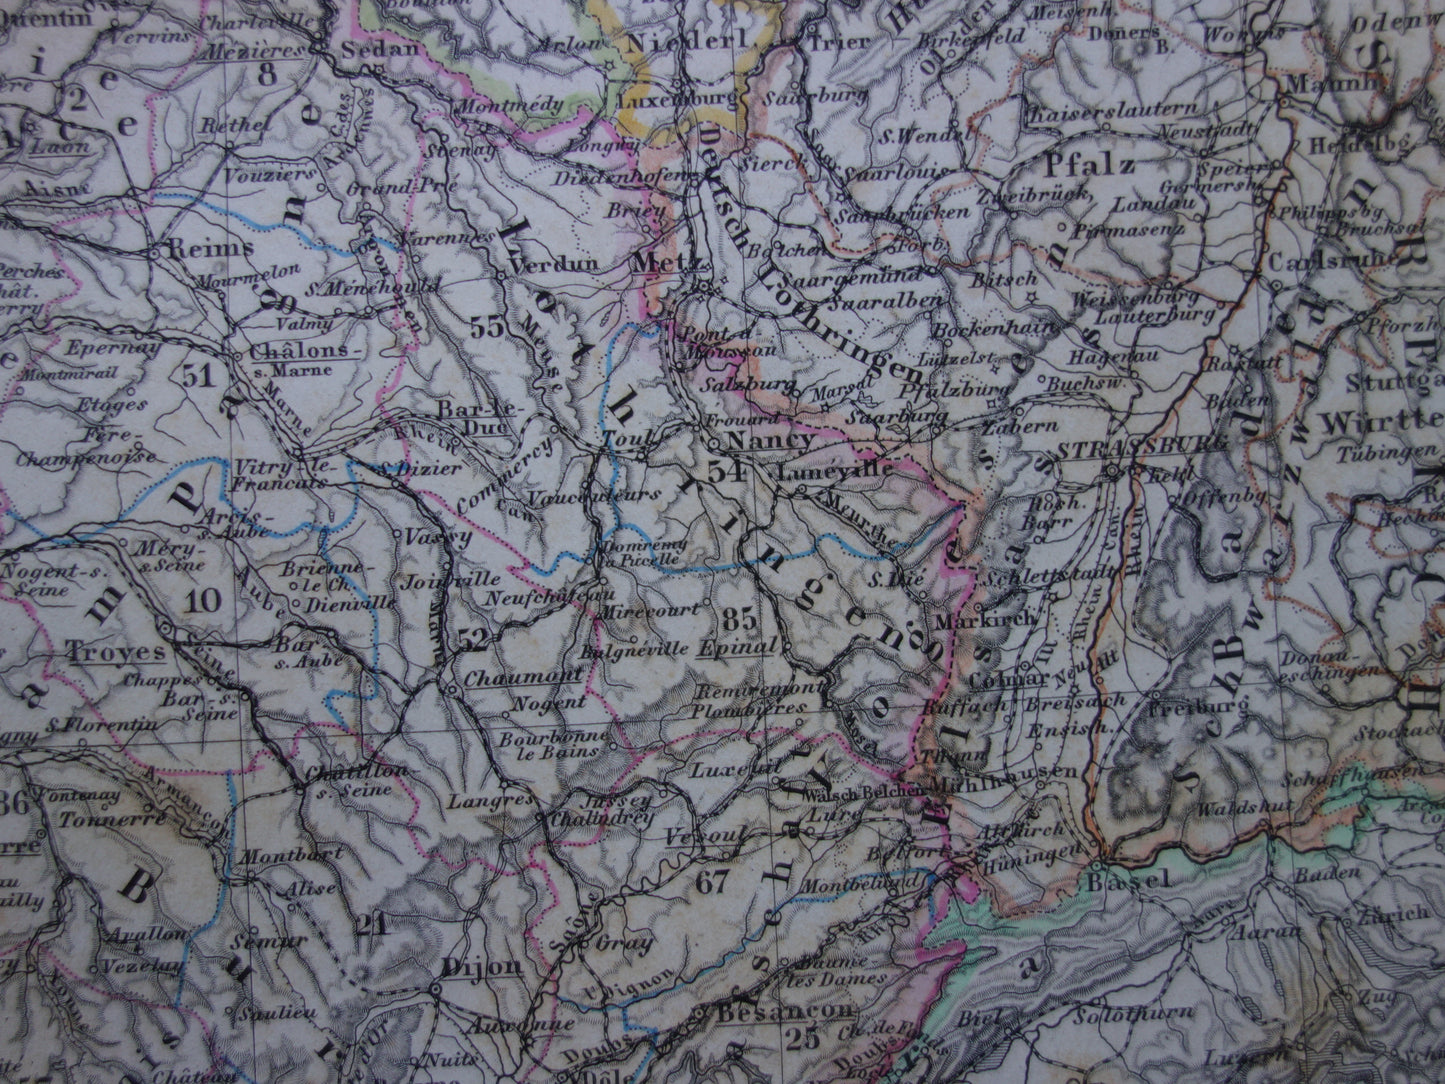 FRANKRIJK oude kaart van Frankrijk 1872 originele antieke landkaart/poster met jaartal